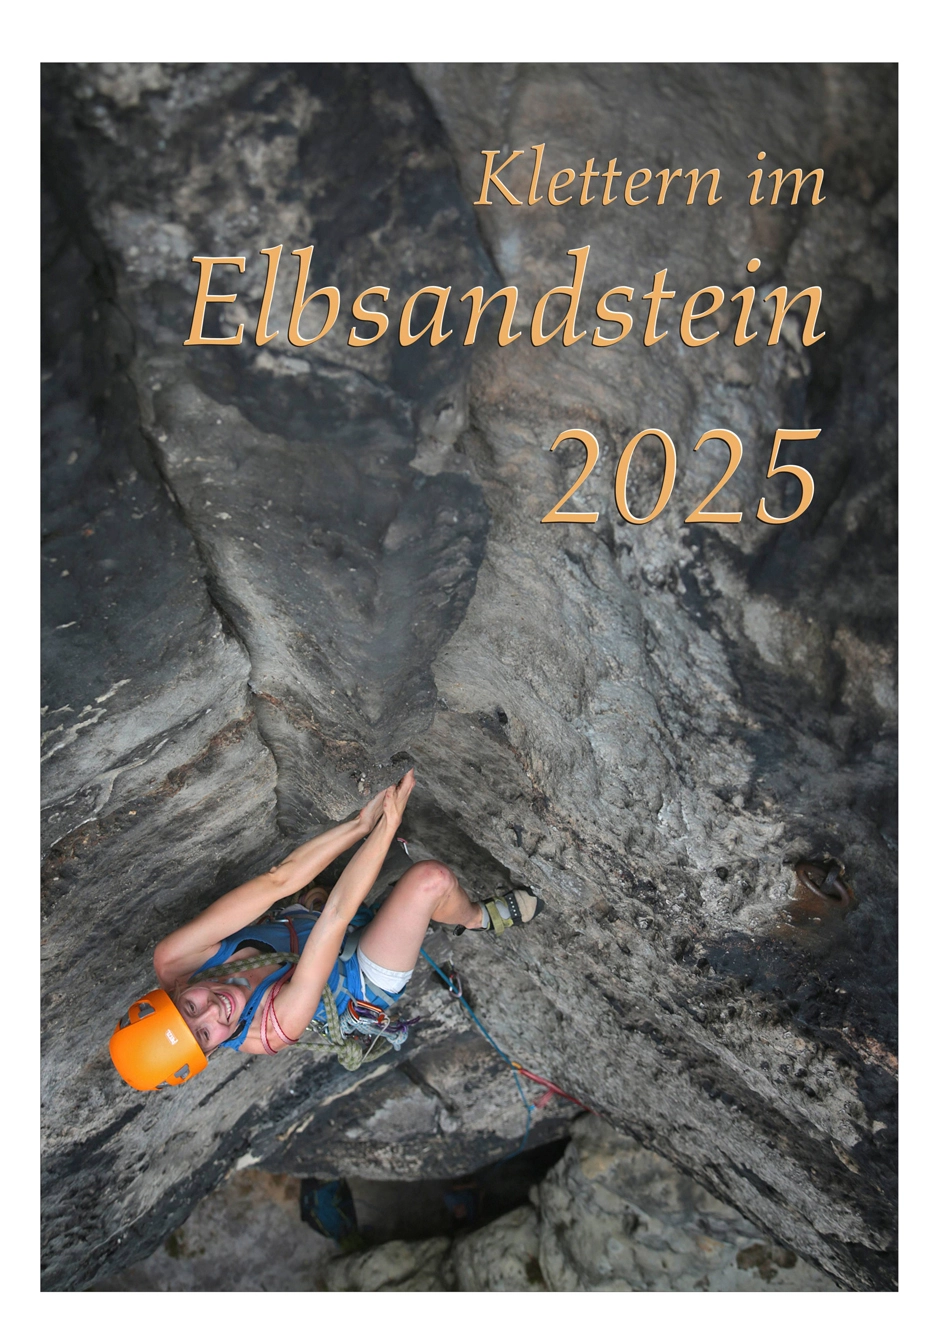 Klettern im Elbsandstein 2025 - Verlag Jäger